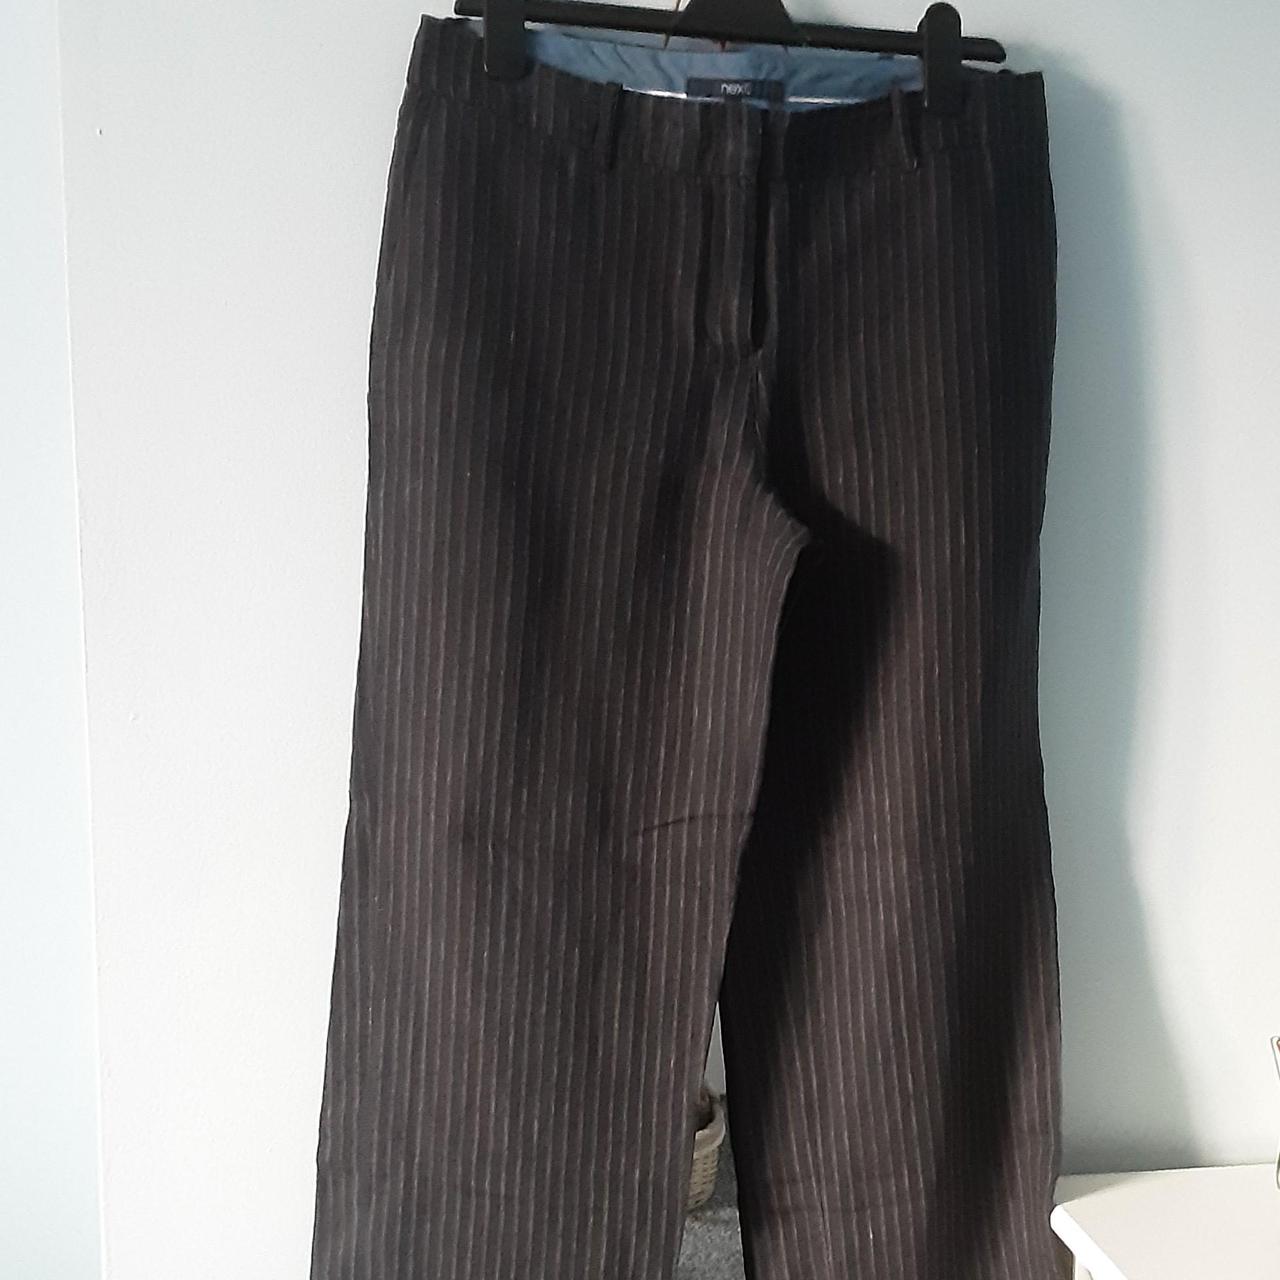 Pinstripe wide leg linen trousers, with 2 side... - Depop